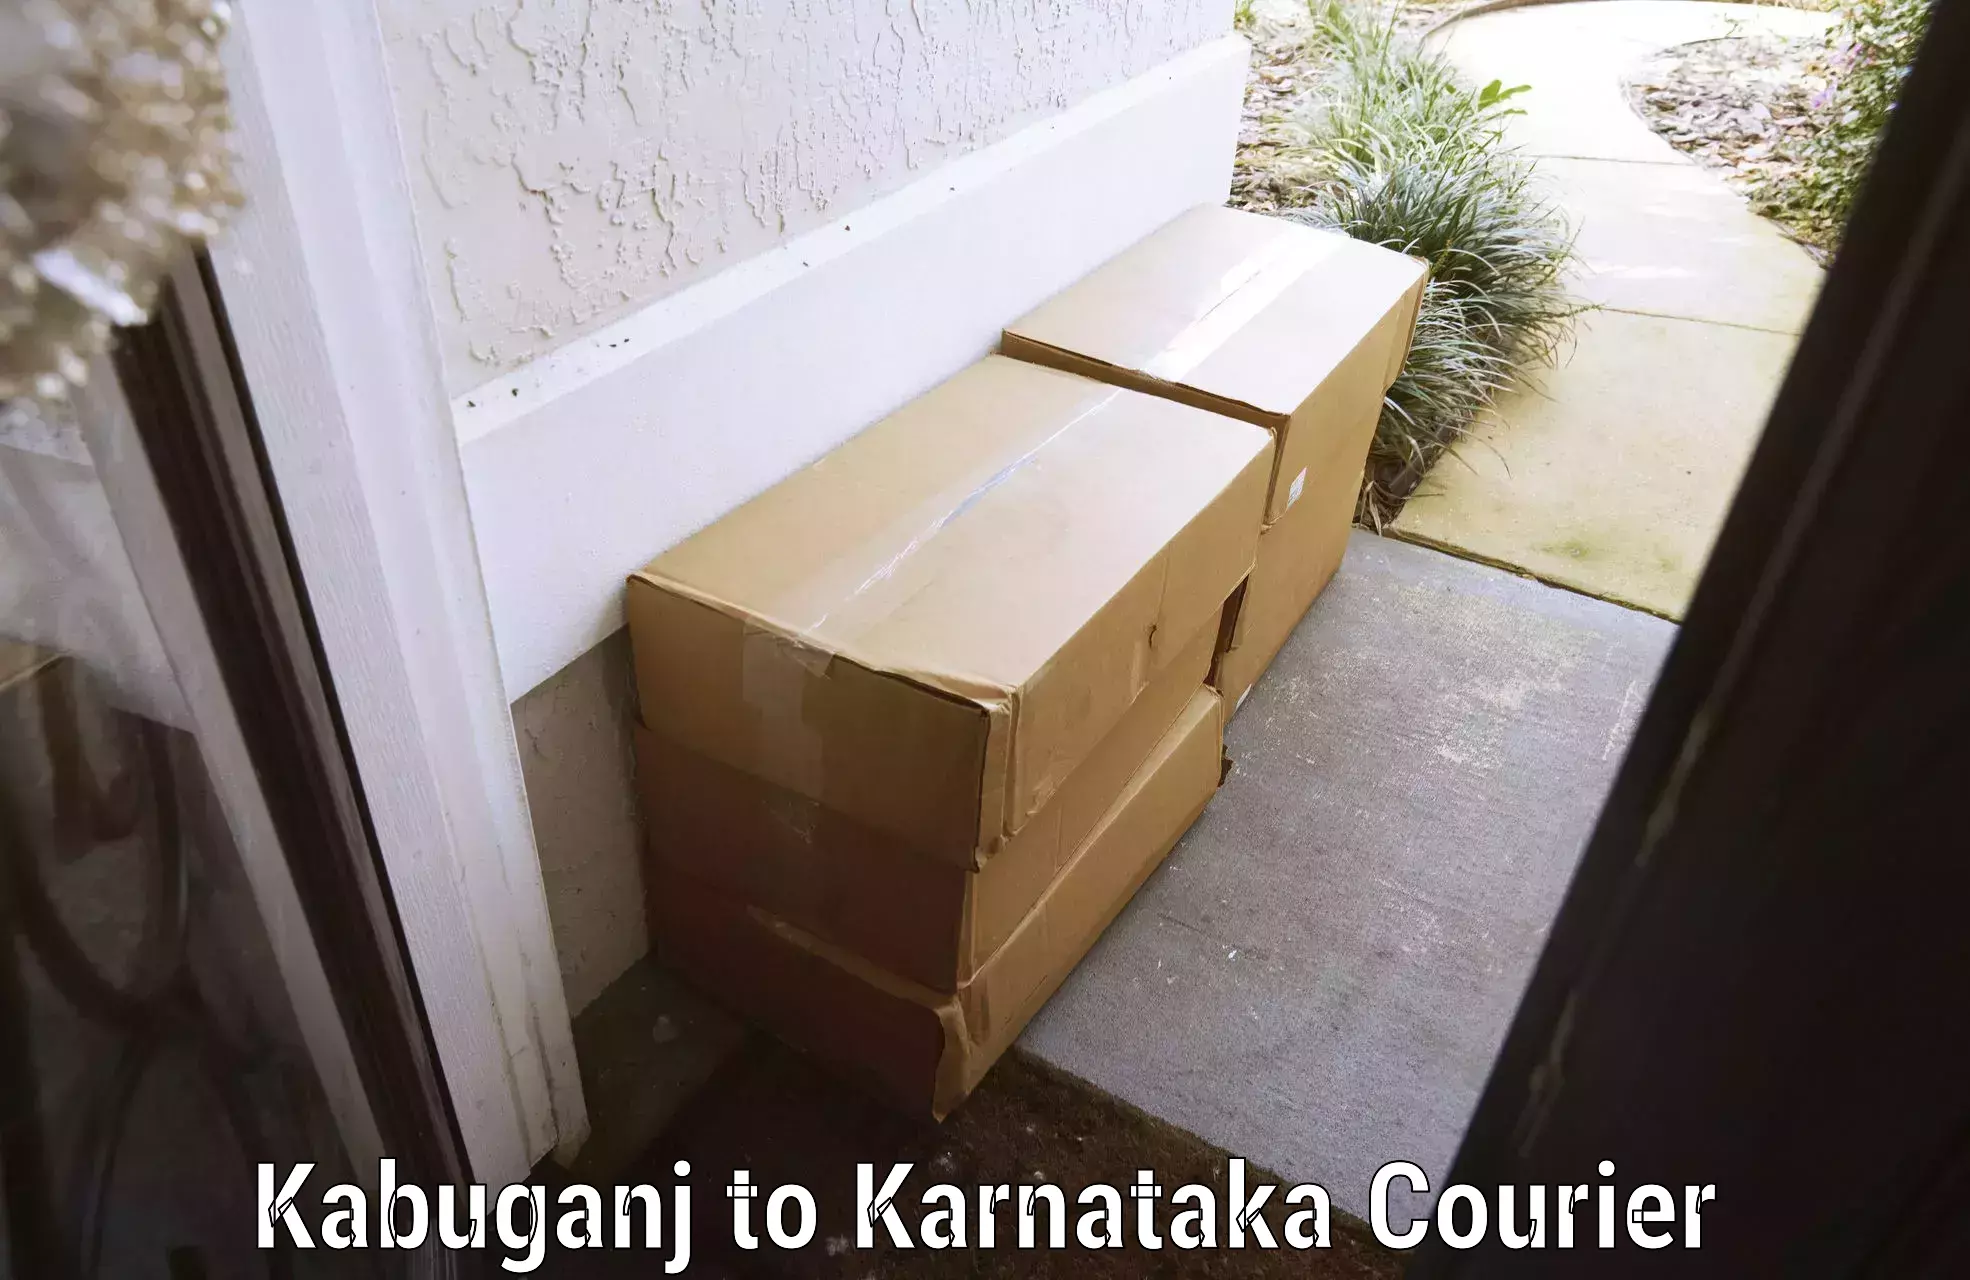 Luggage delivery operations Kabuganj to Srirangapatna